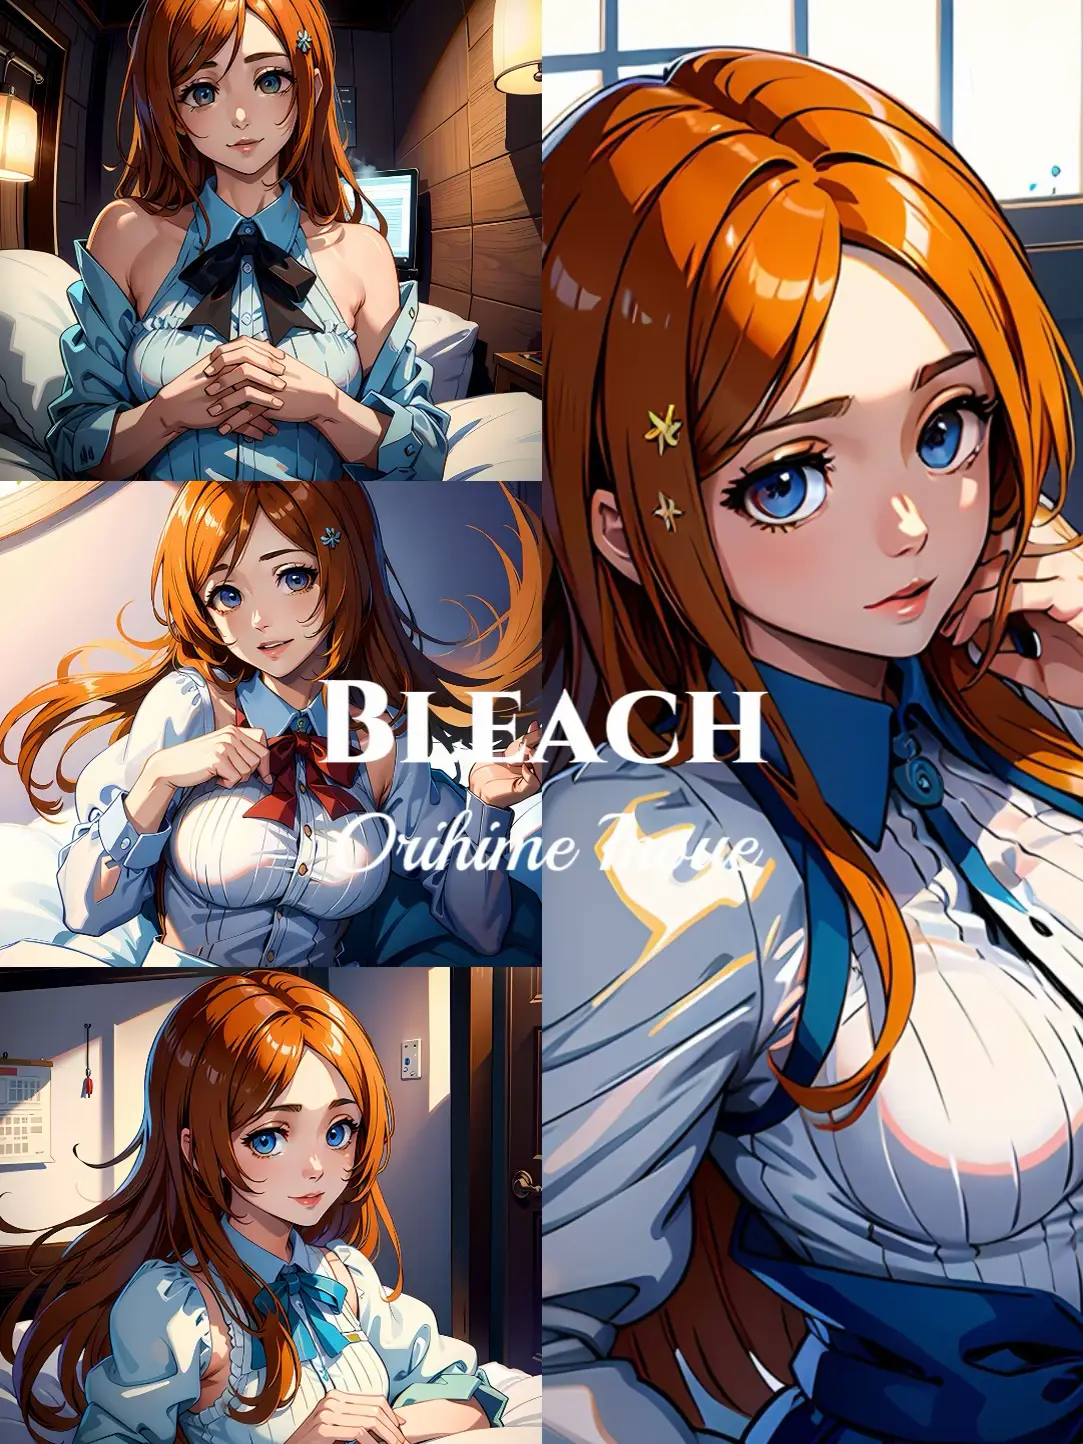 Orihime Inoue - Bleach Anime - Bleach Animated World